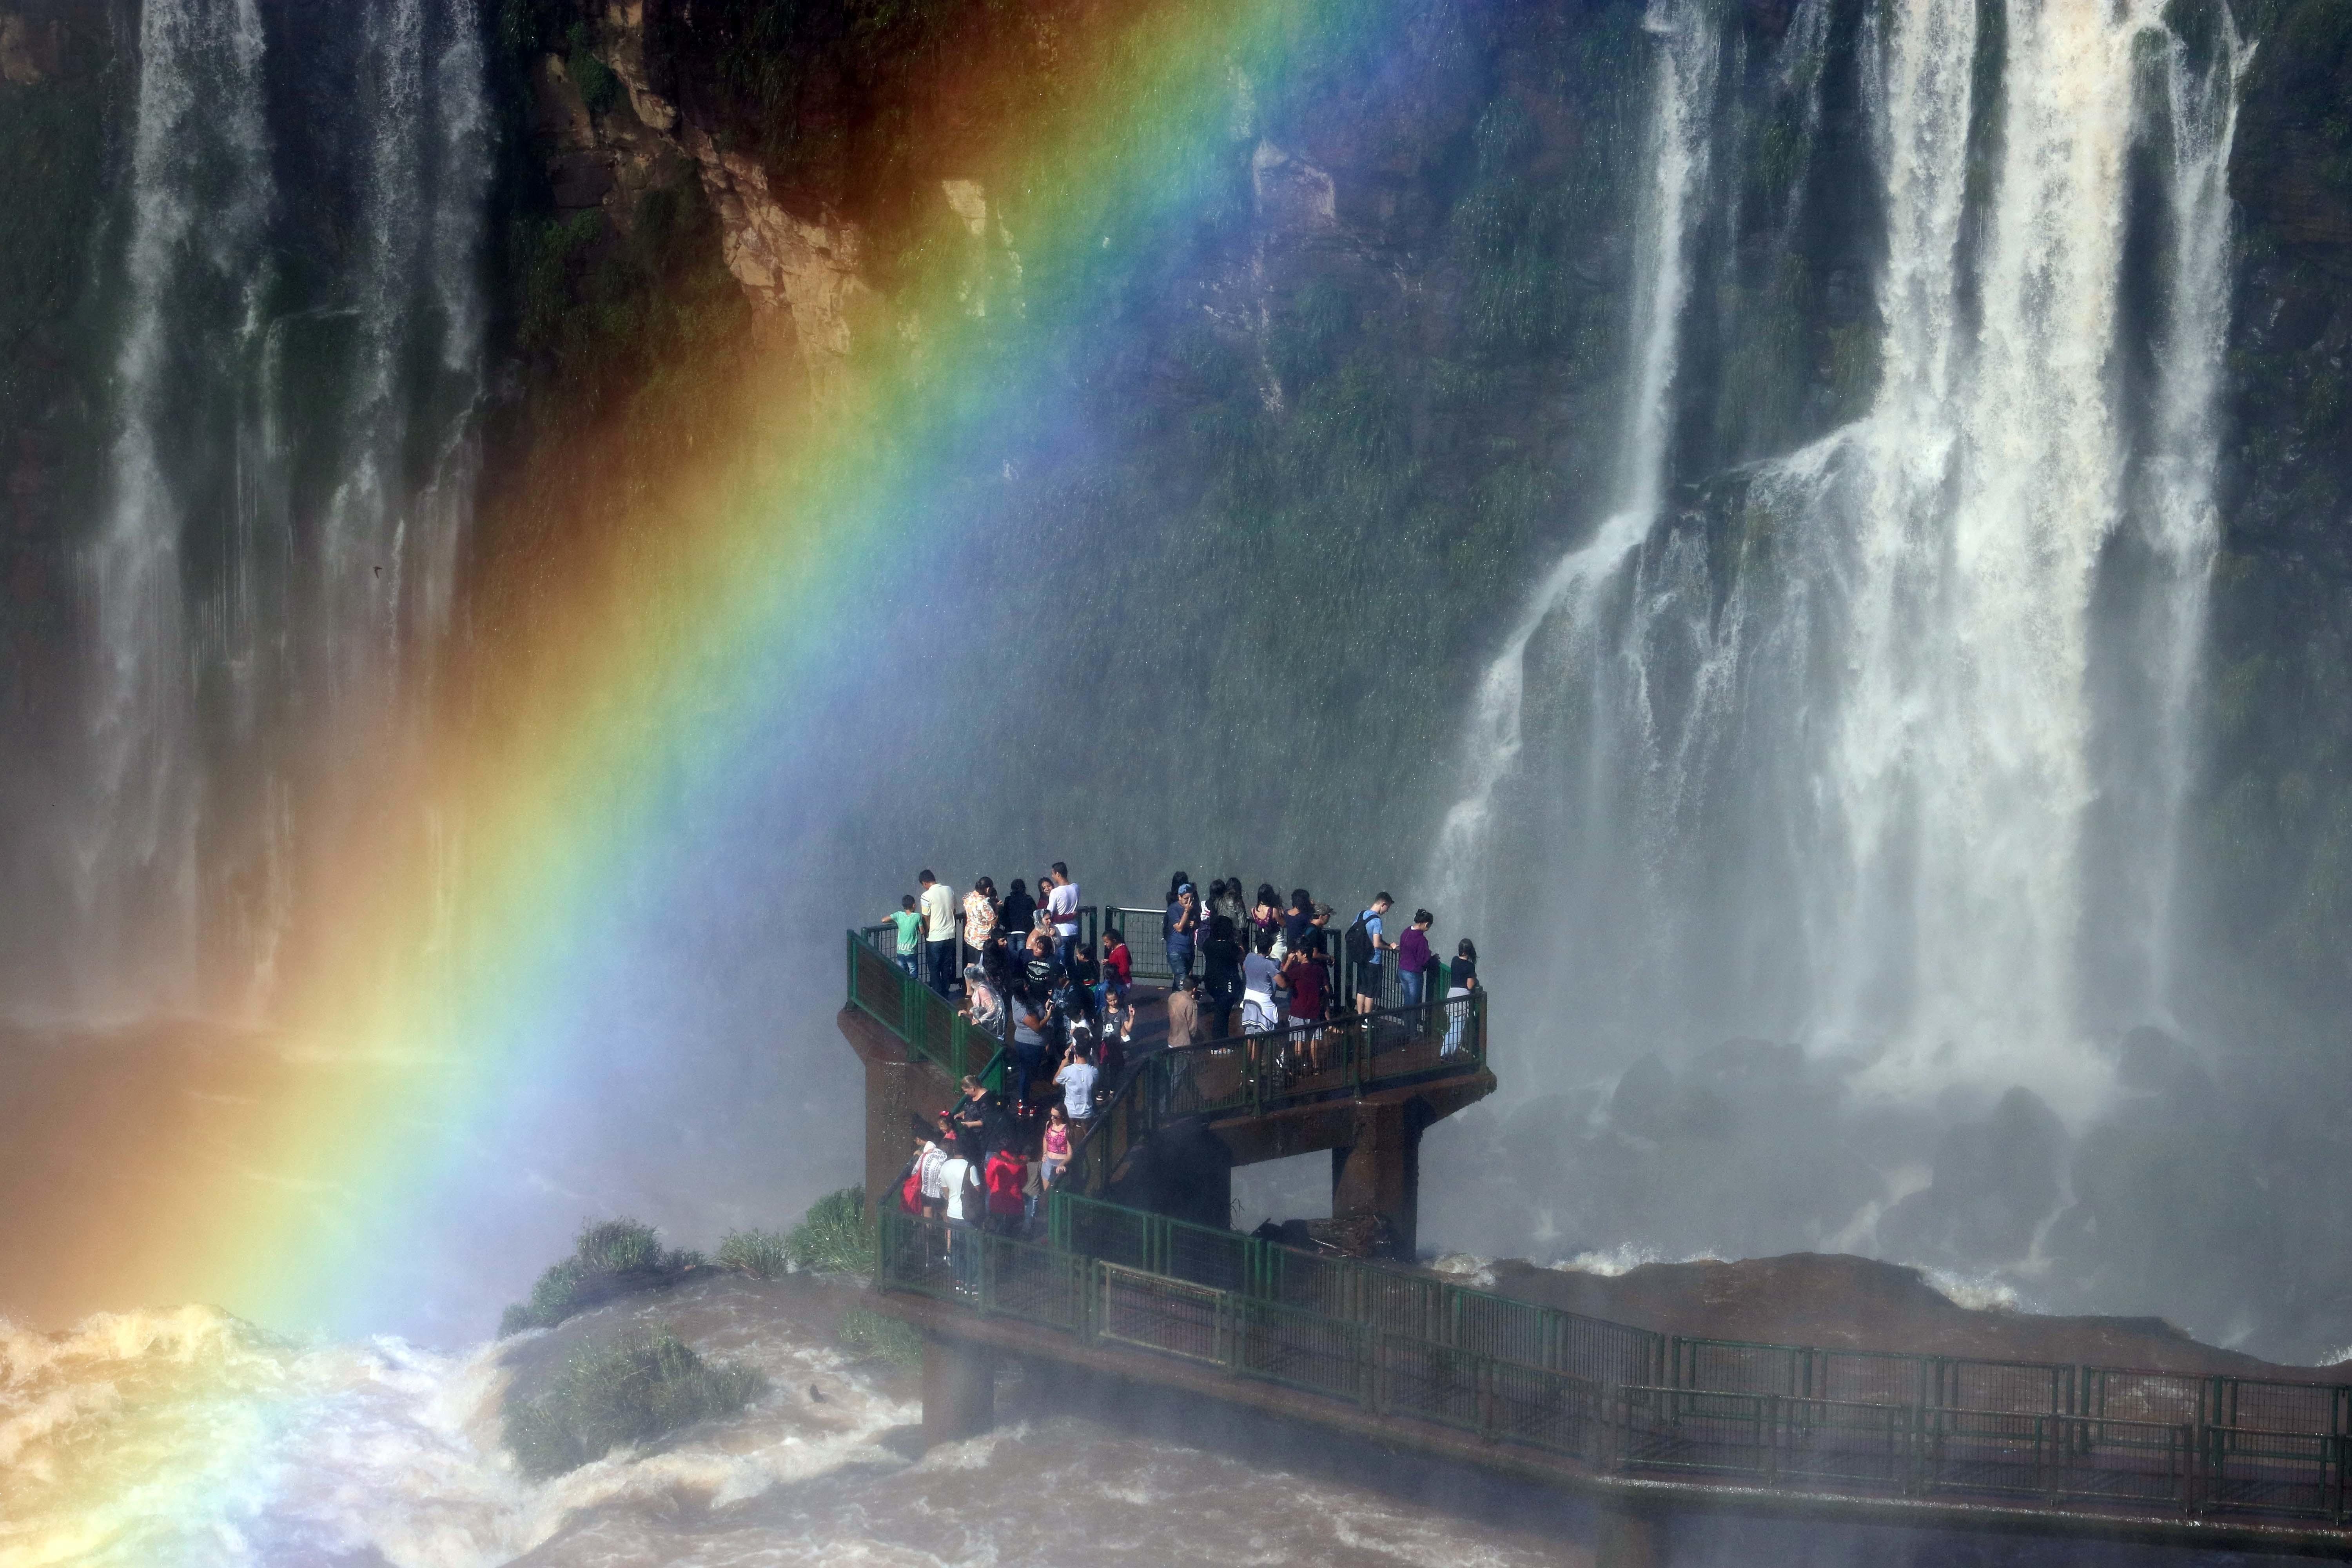 Iguazu Falls In Brazil